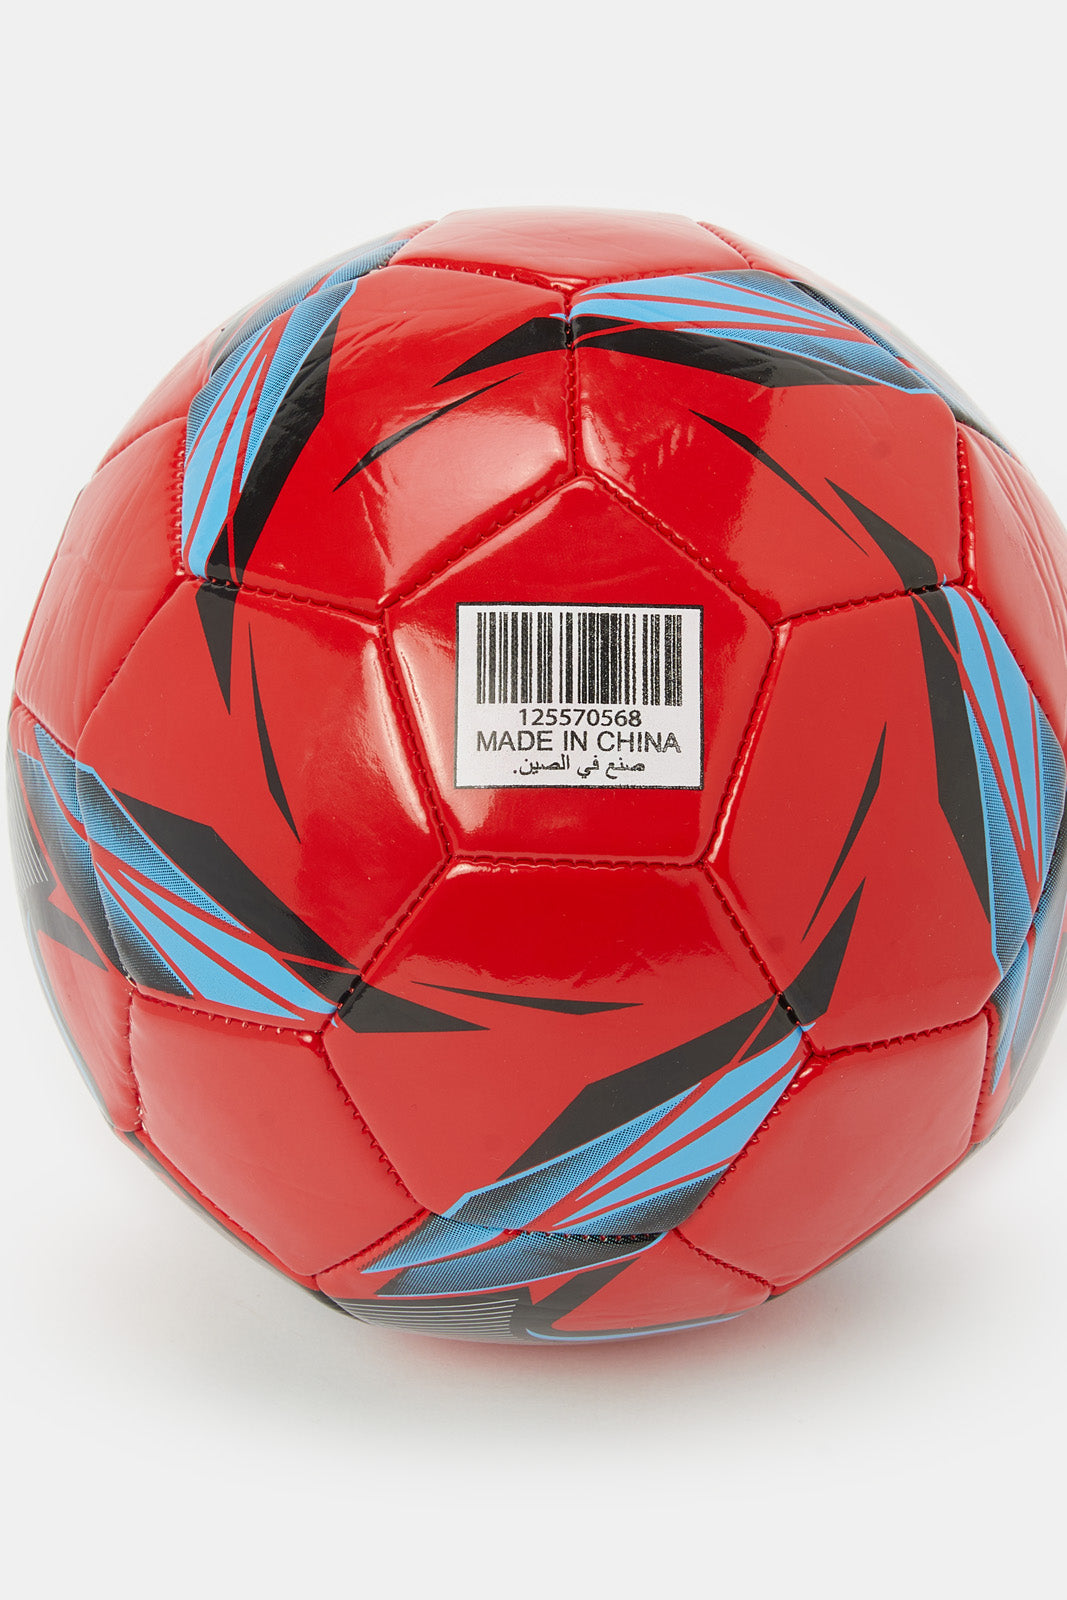 

كرة قدم مطبوعة باللون الأحمر والأزرق